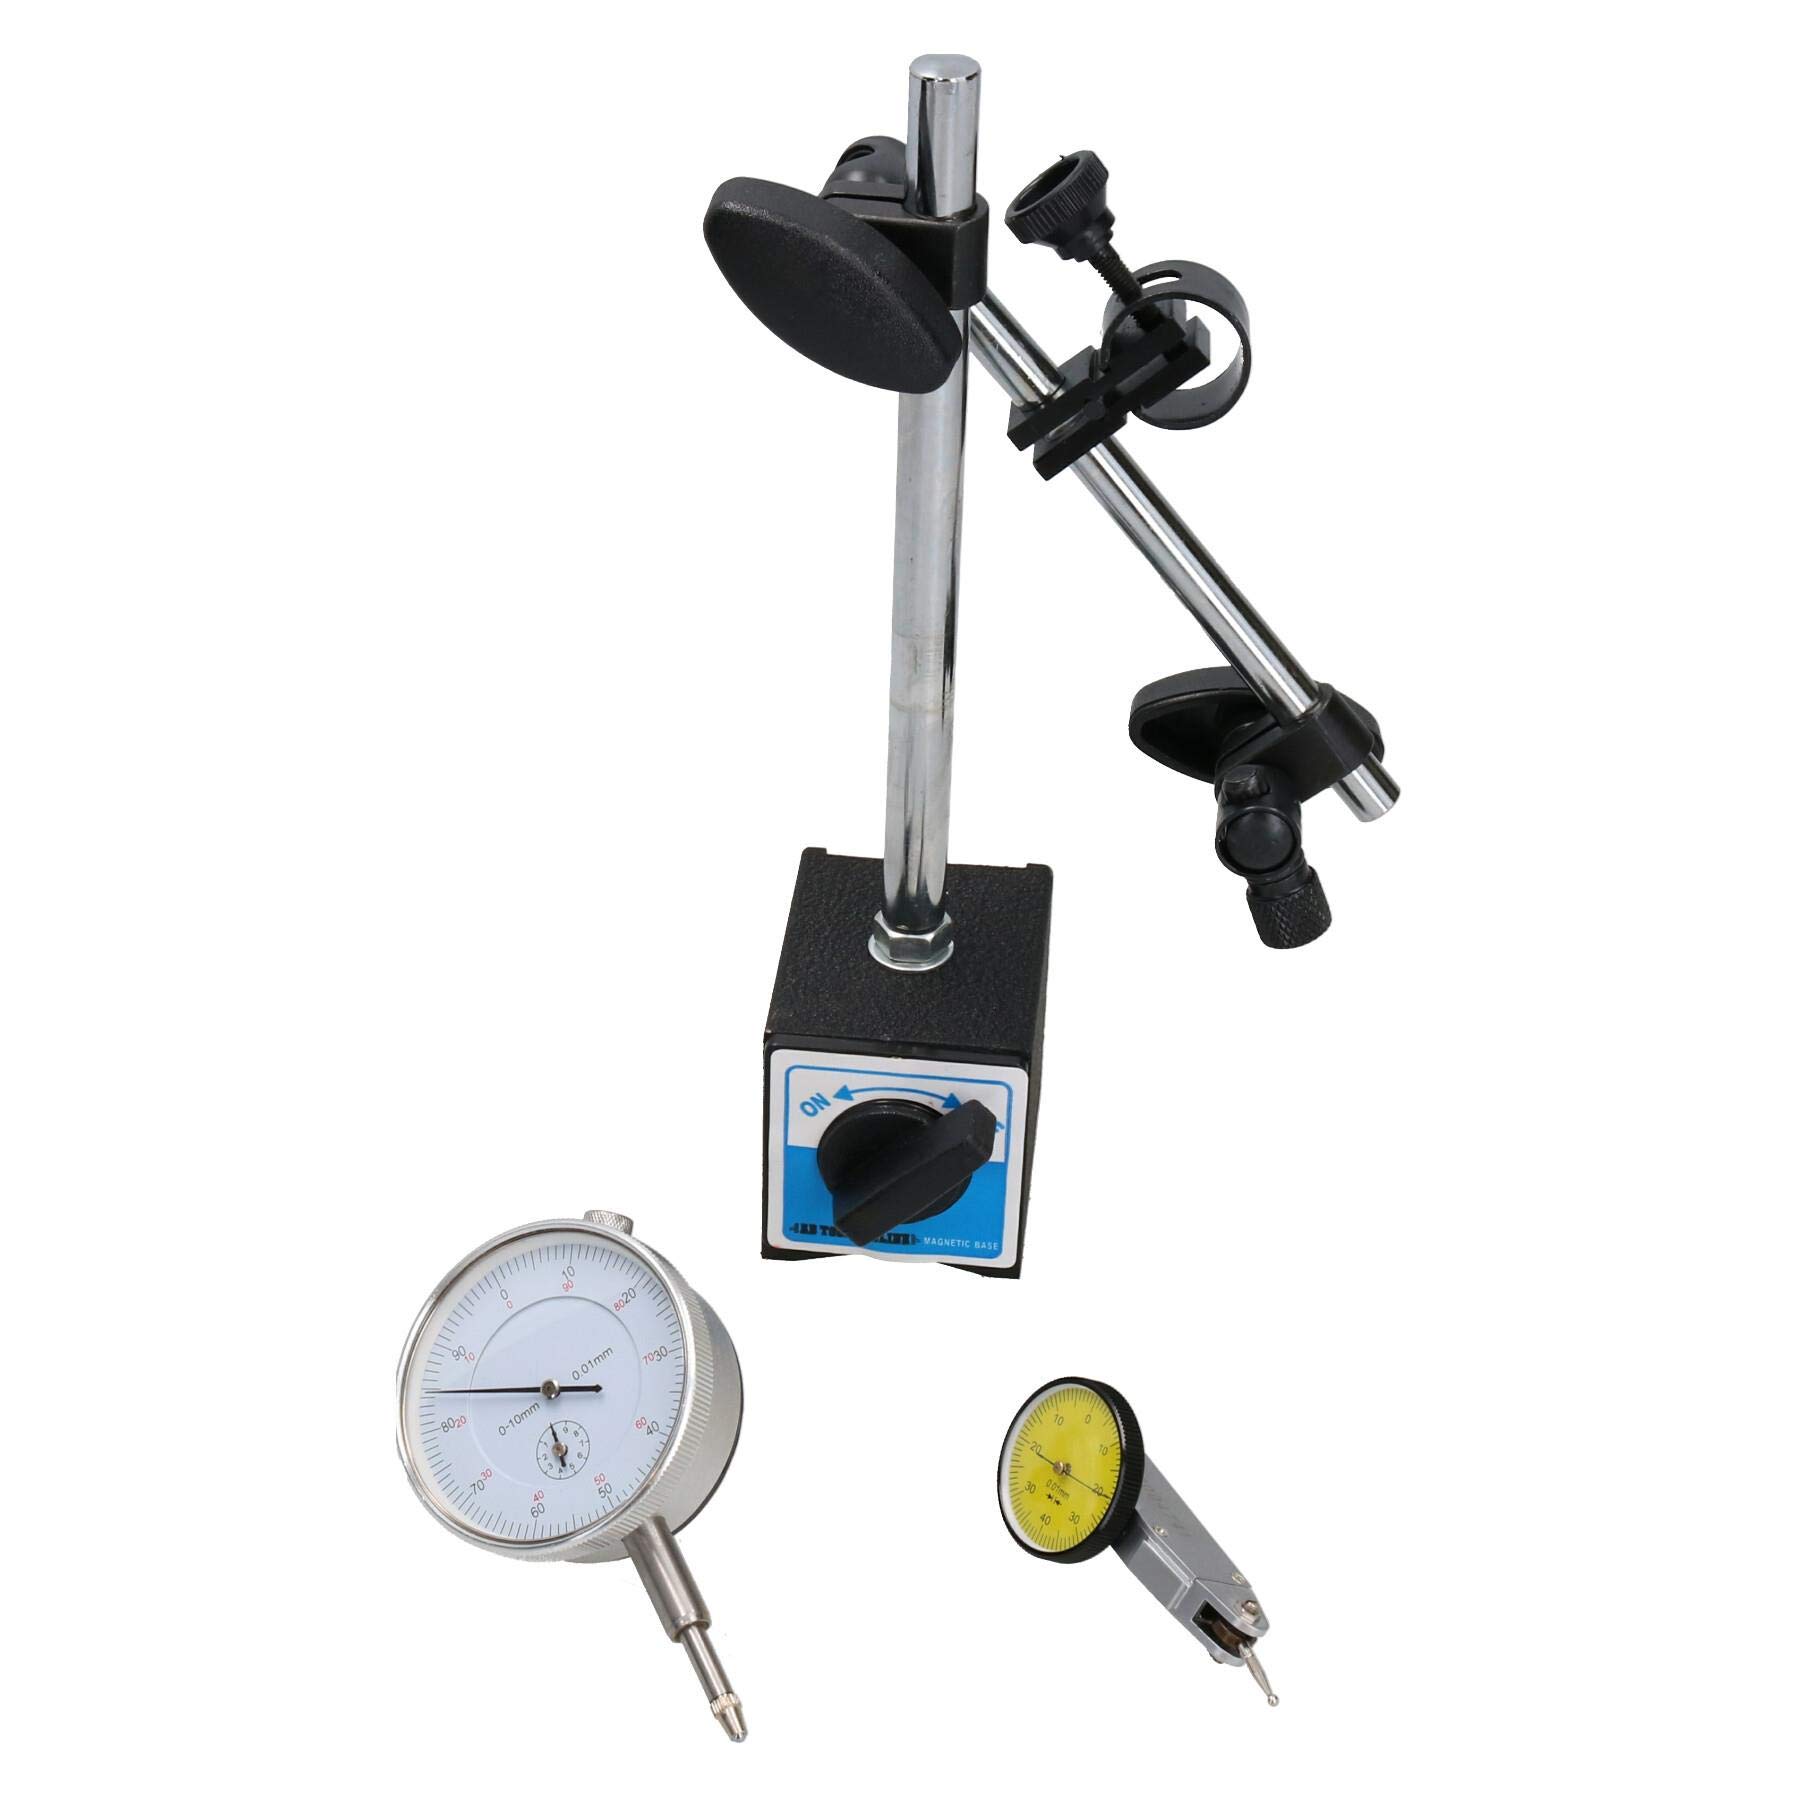 AB Tools Messuhr mit Hebel und Kolben, metrische Anzeige, magnetischer Sockel, DTI-Messgerät, Uhr von AB Tools